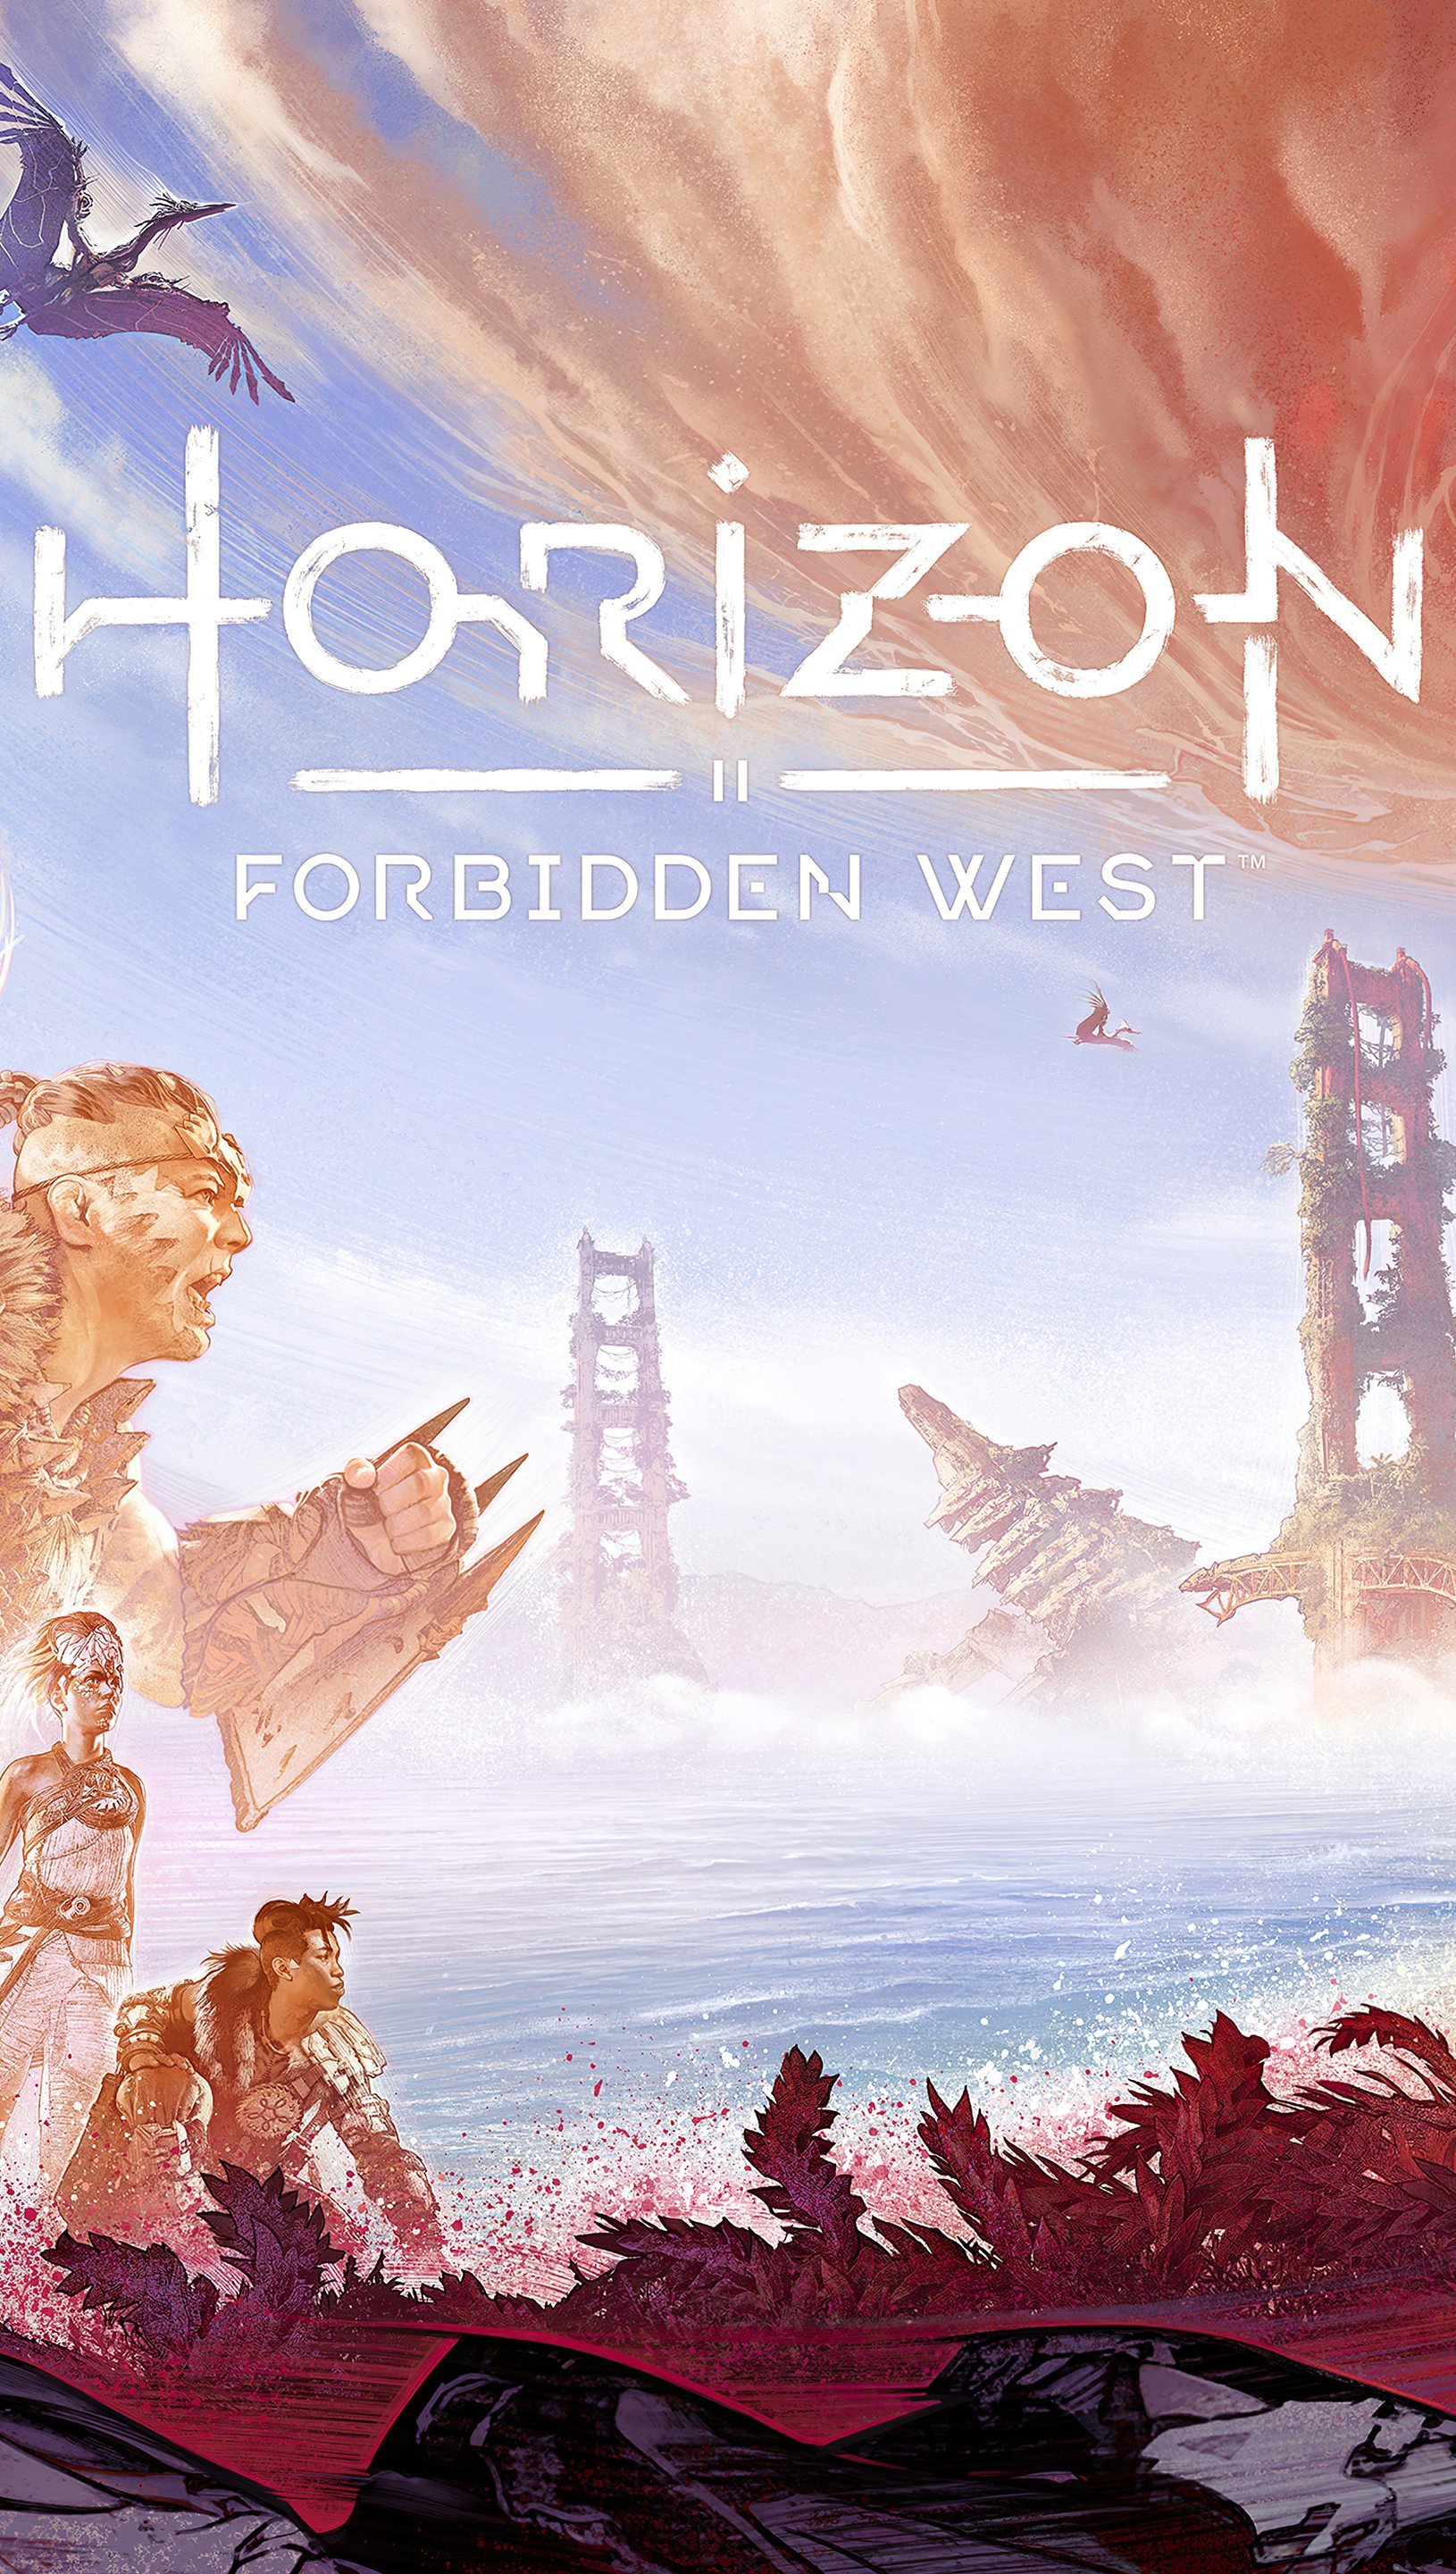 Fondos de pantalla Horizon II Forbidden West Vertical